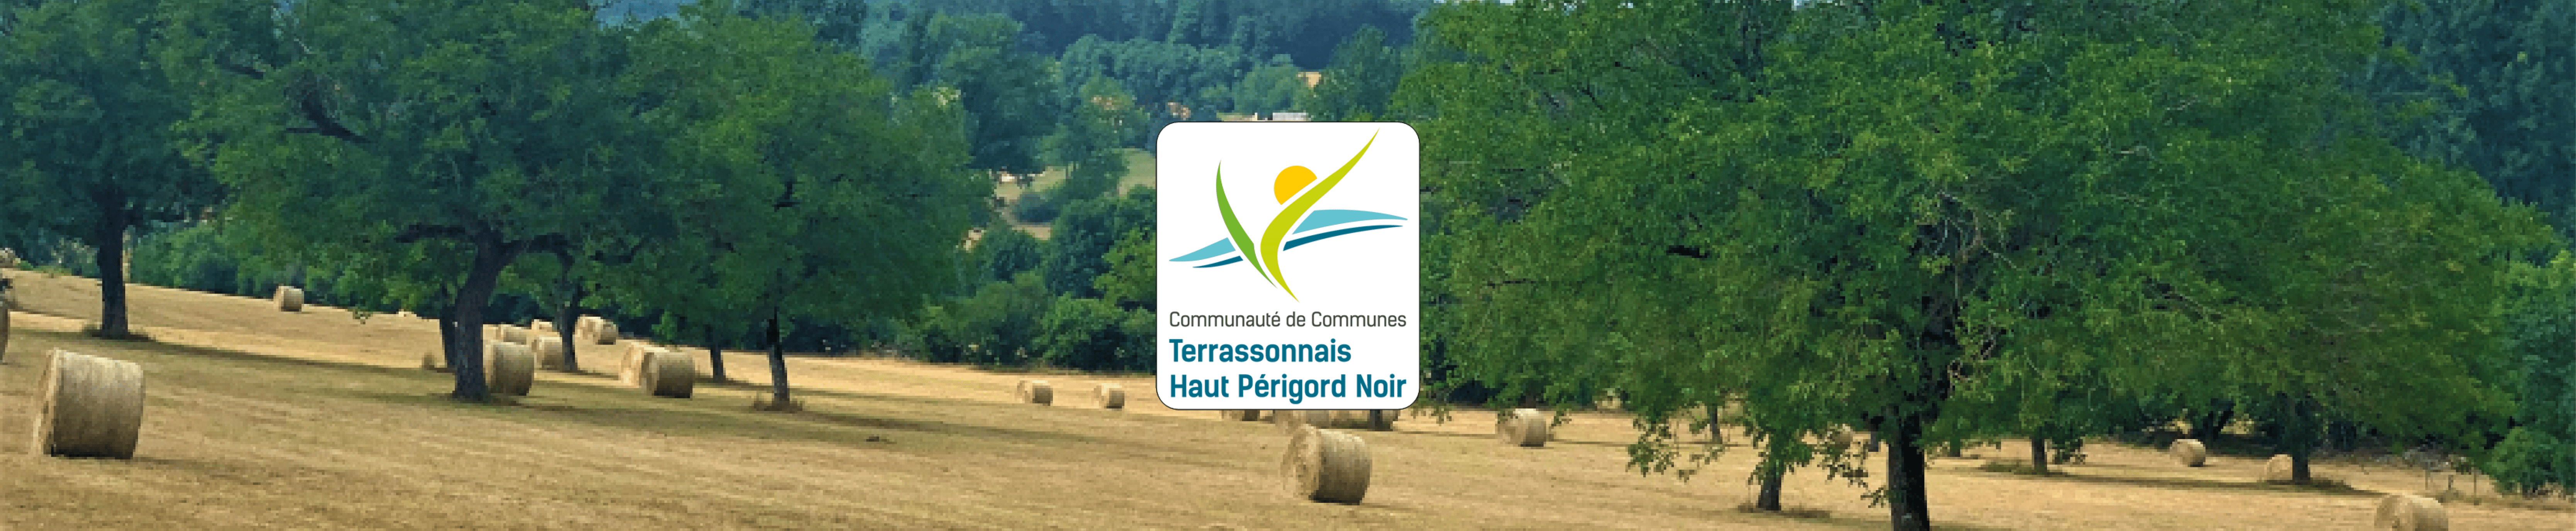 Communauté de Communes Terrassonnais Haut Périgord Noir